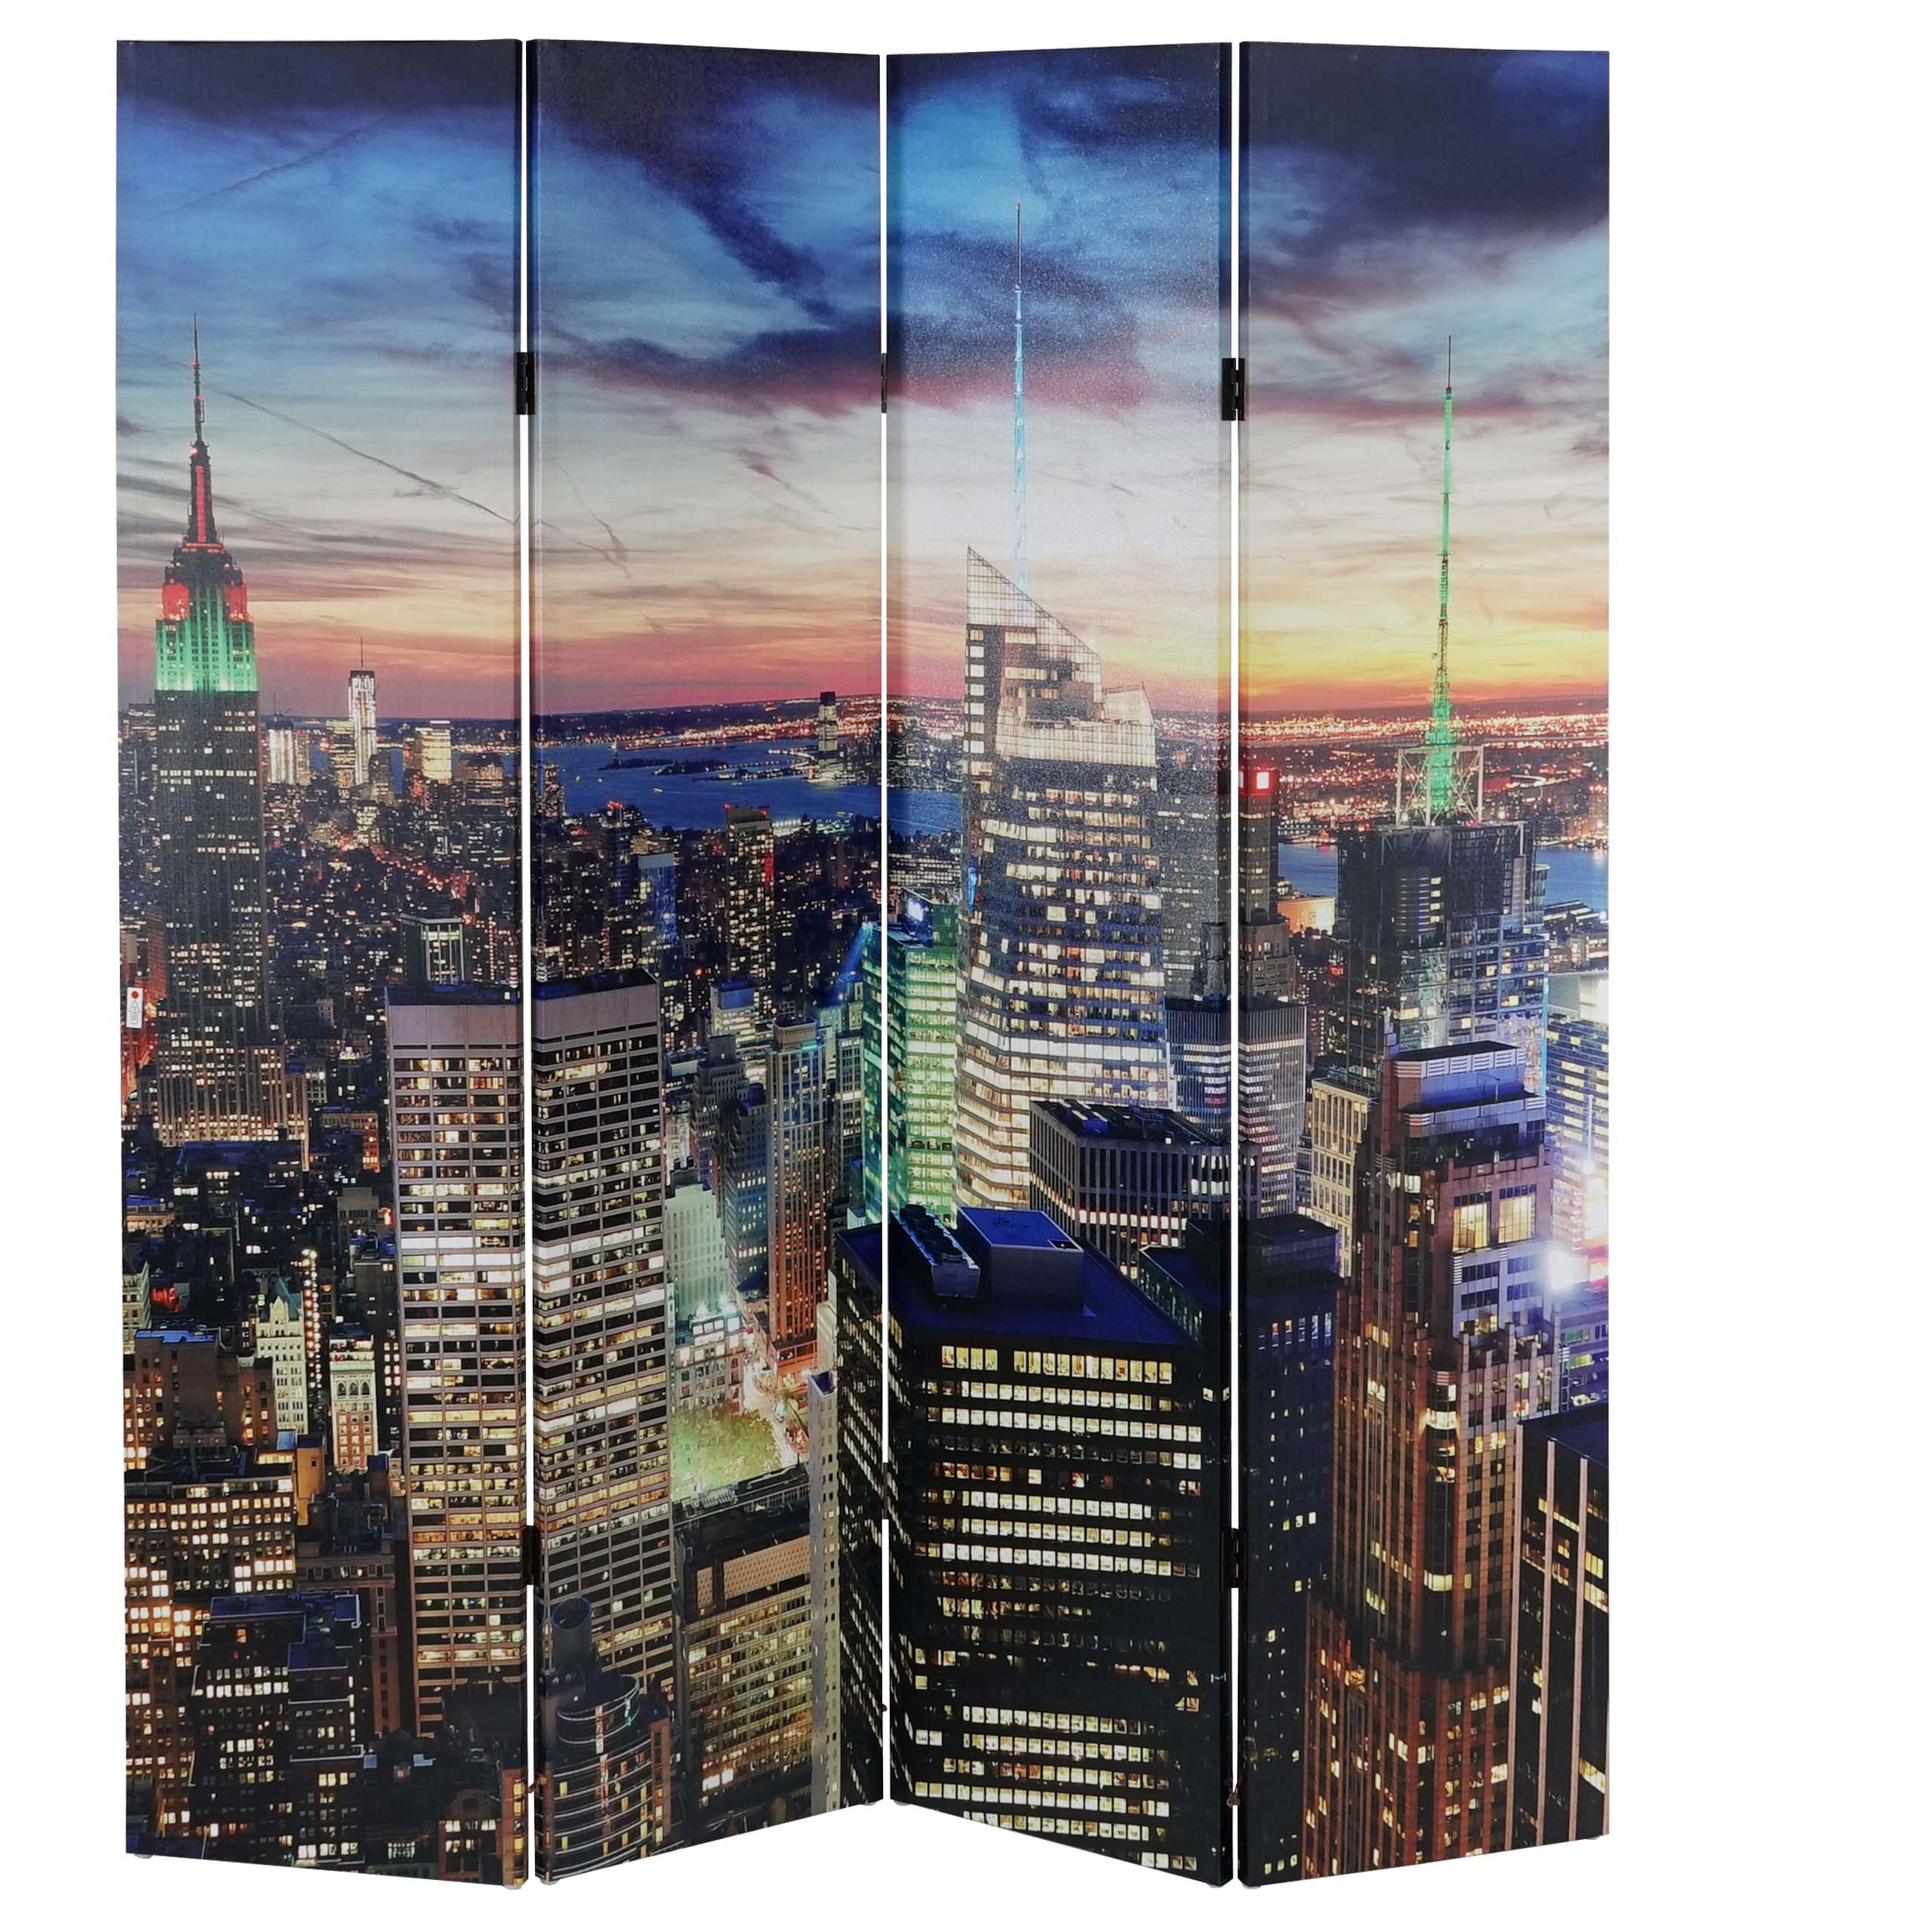 Bürowandschirm LED CITY, 4-teilig, 180x160x2,5cm, mit Beleuchtung, sehr praktisch, Holzstruktur